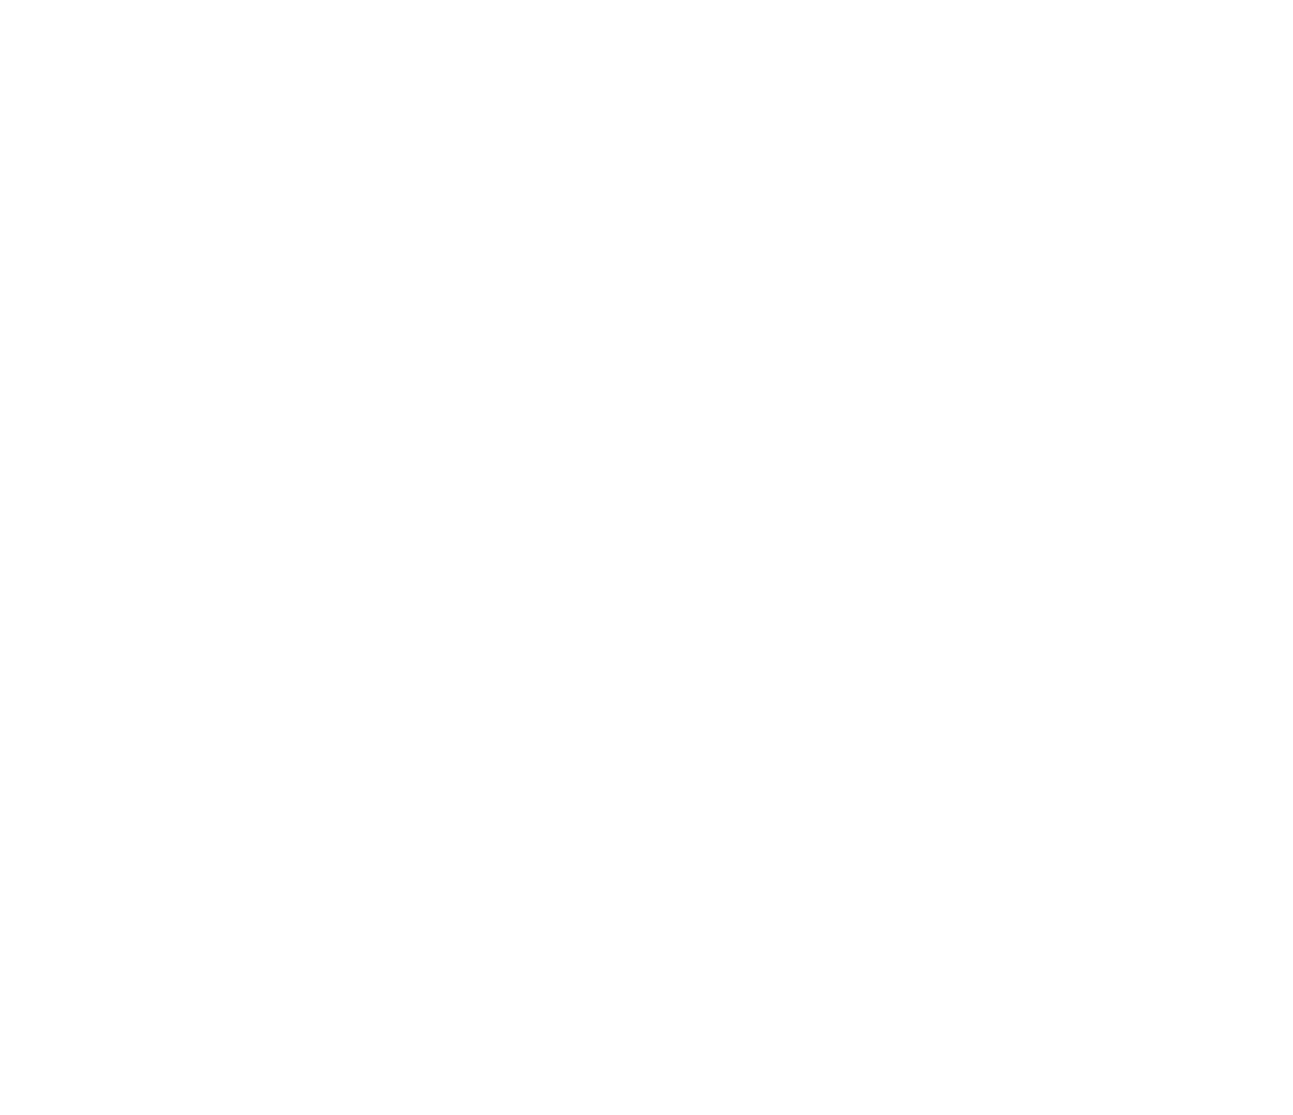 Good Food is Good Mood